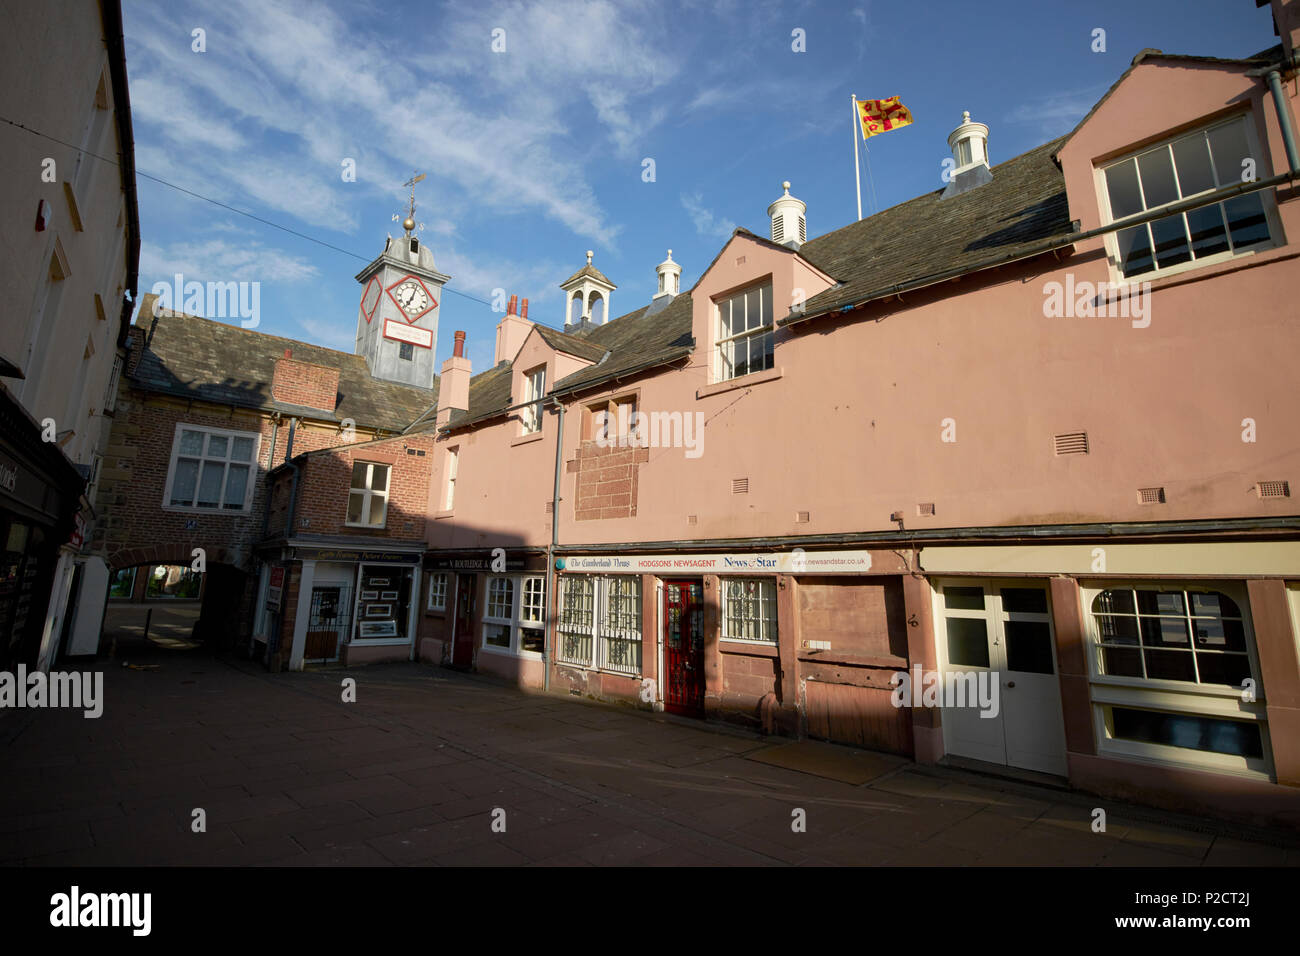 Rückseite des alten Rathauses in St Albans Zeile Carlisle Cumbria England Großbritannien Stockfoto